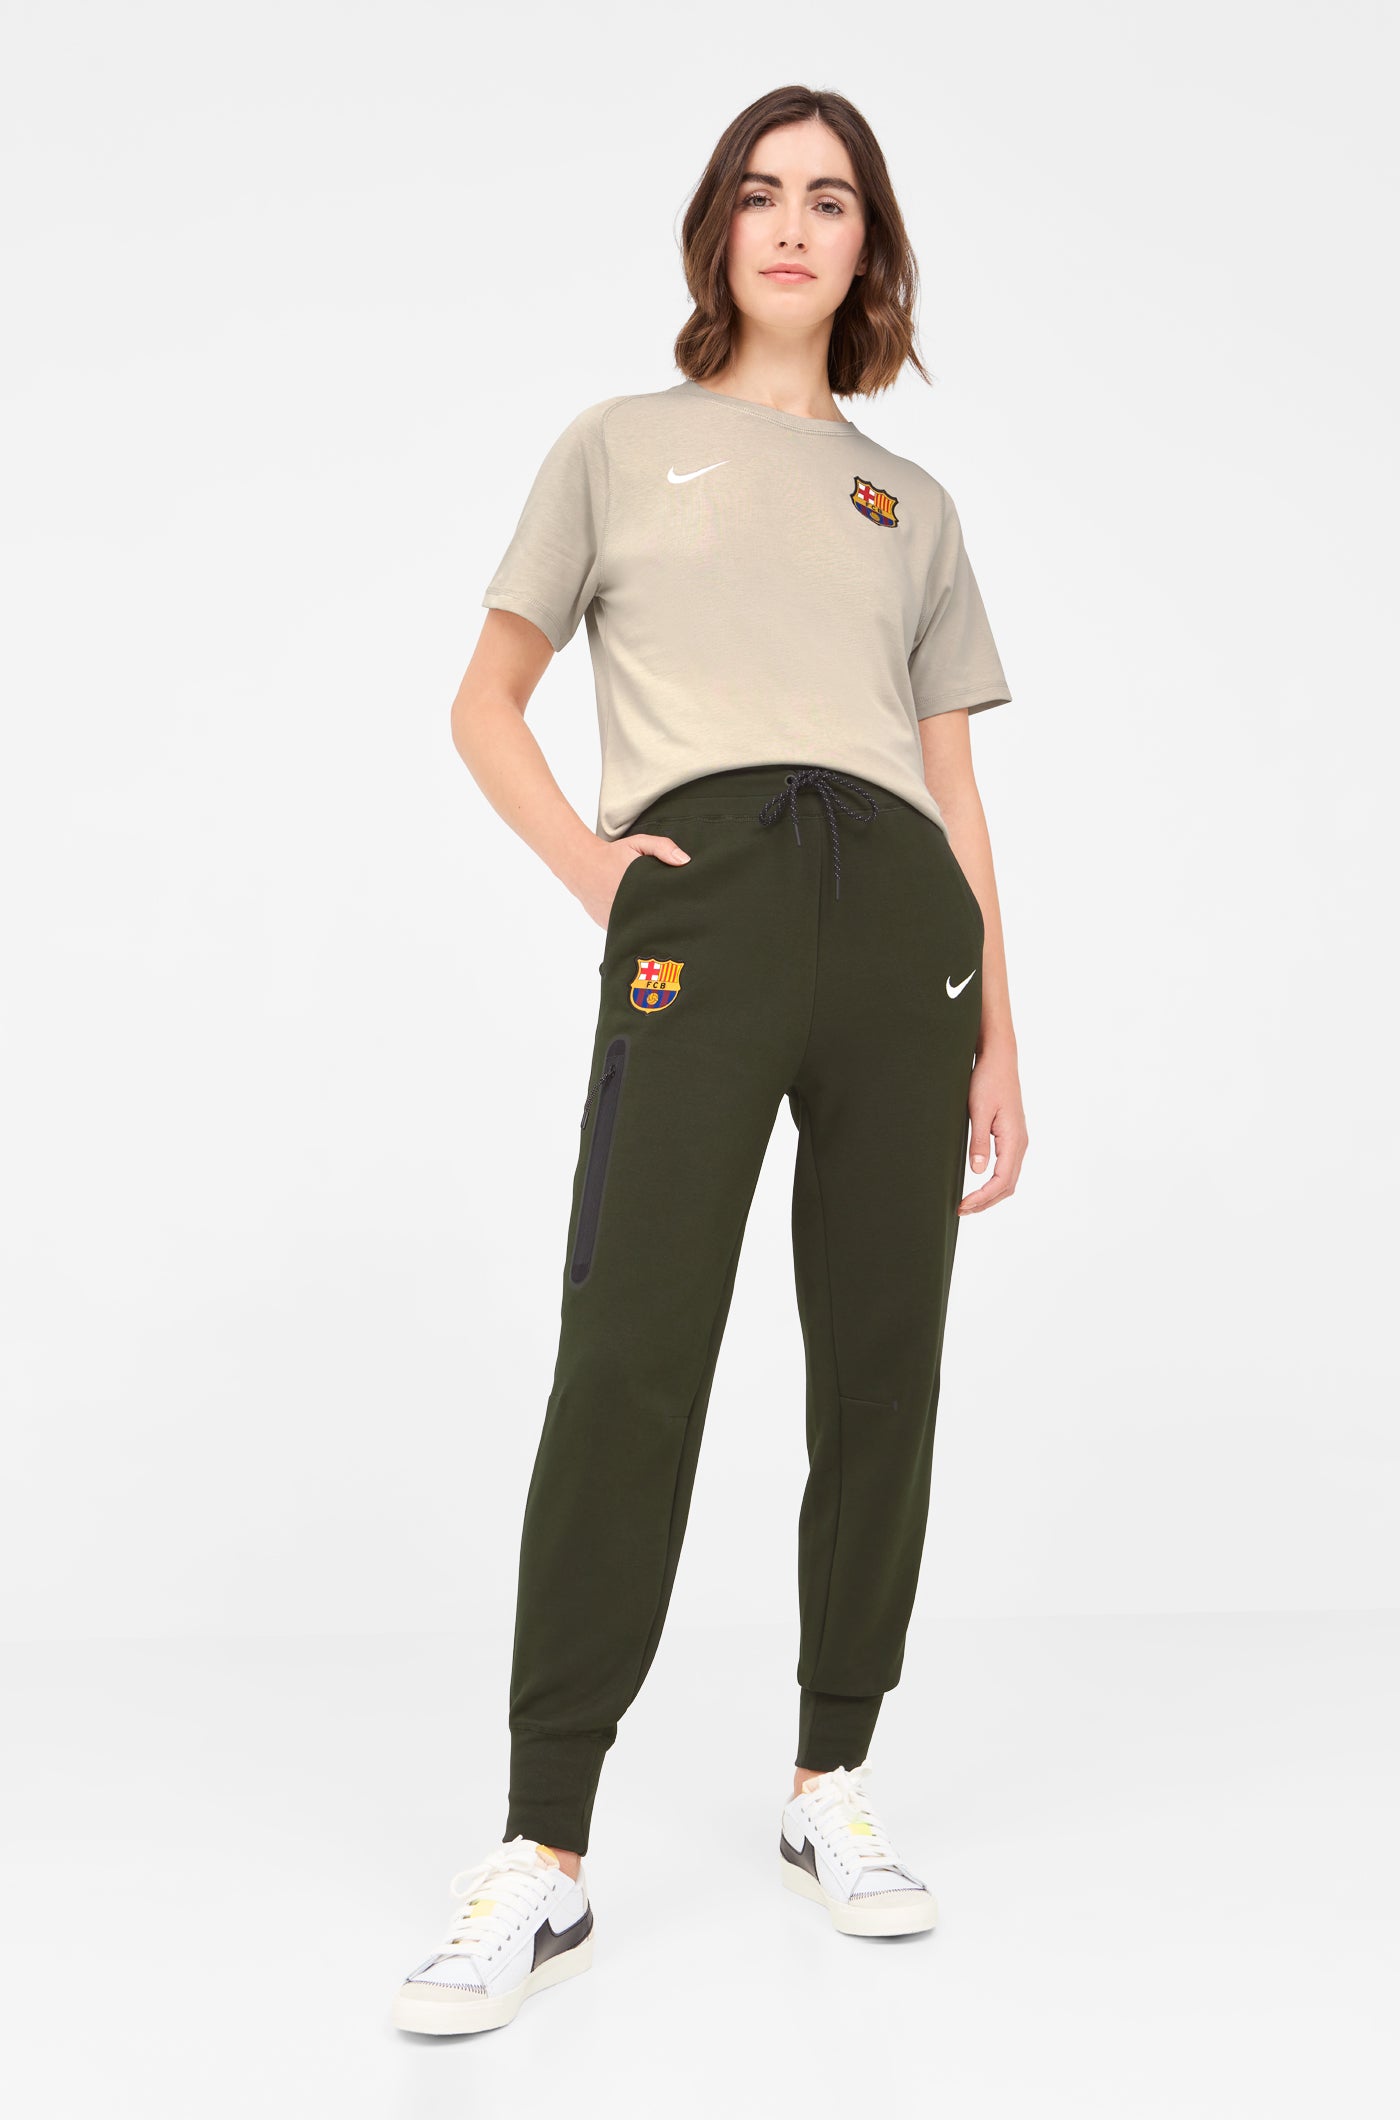 Tech Barça Nike Pants - Women – Barça Official Store Spotify Camp Nou